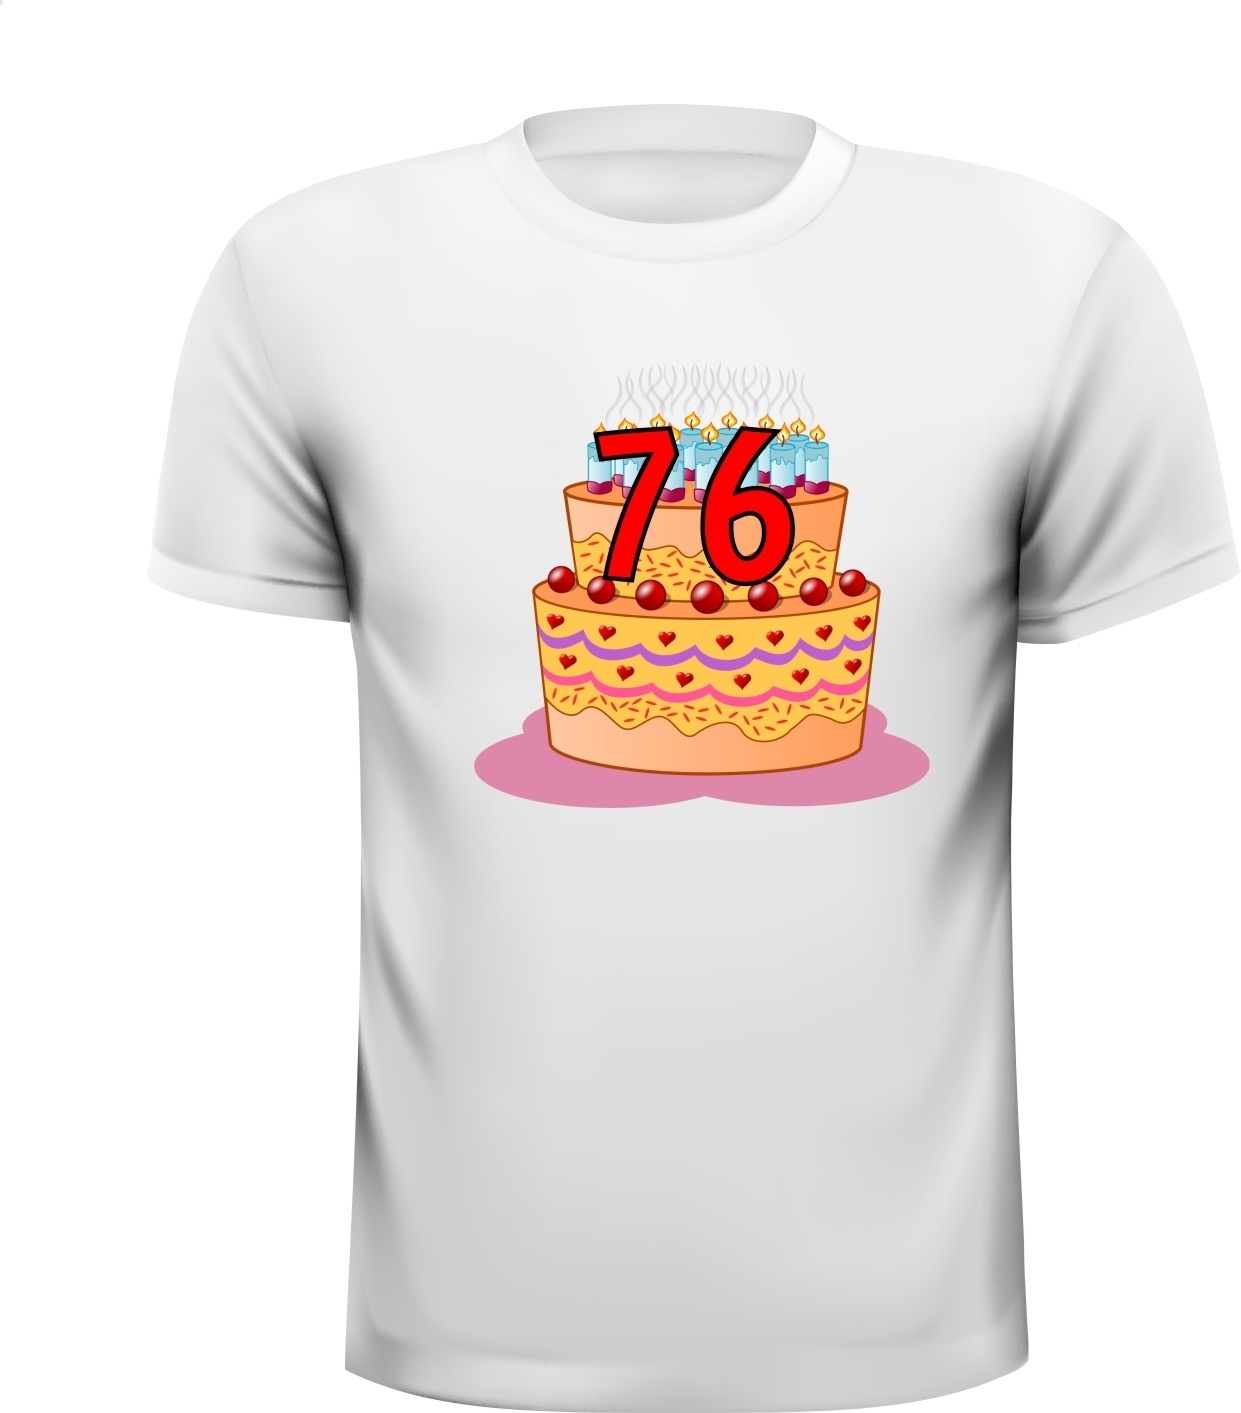 Leuk full colour leeftijd shirt voor een verjaardag van 76 jaar